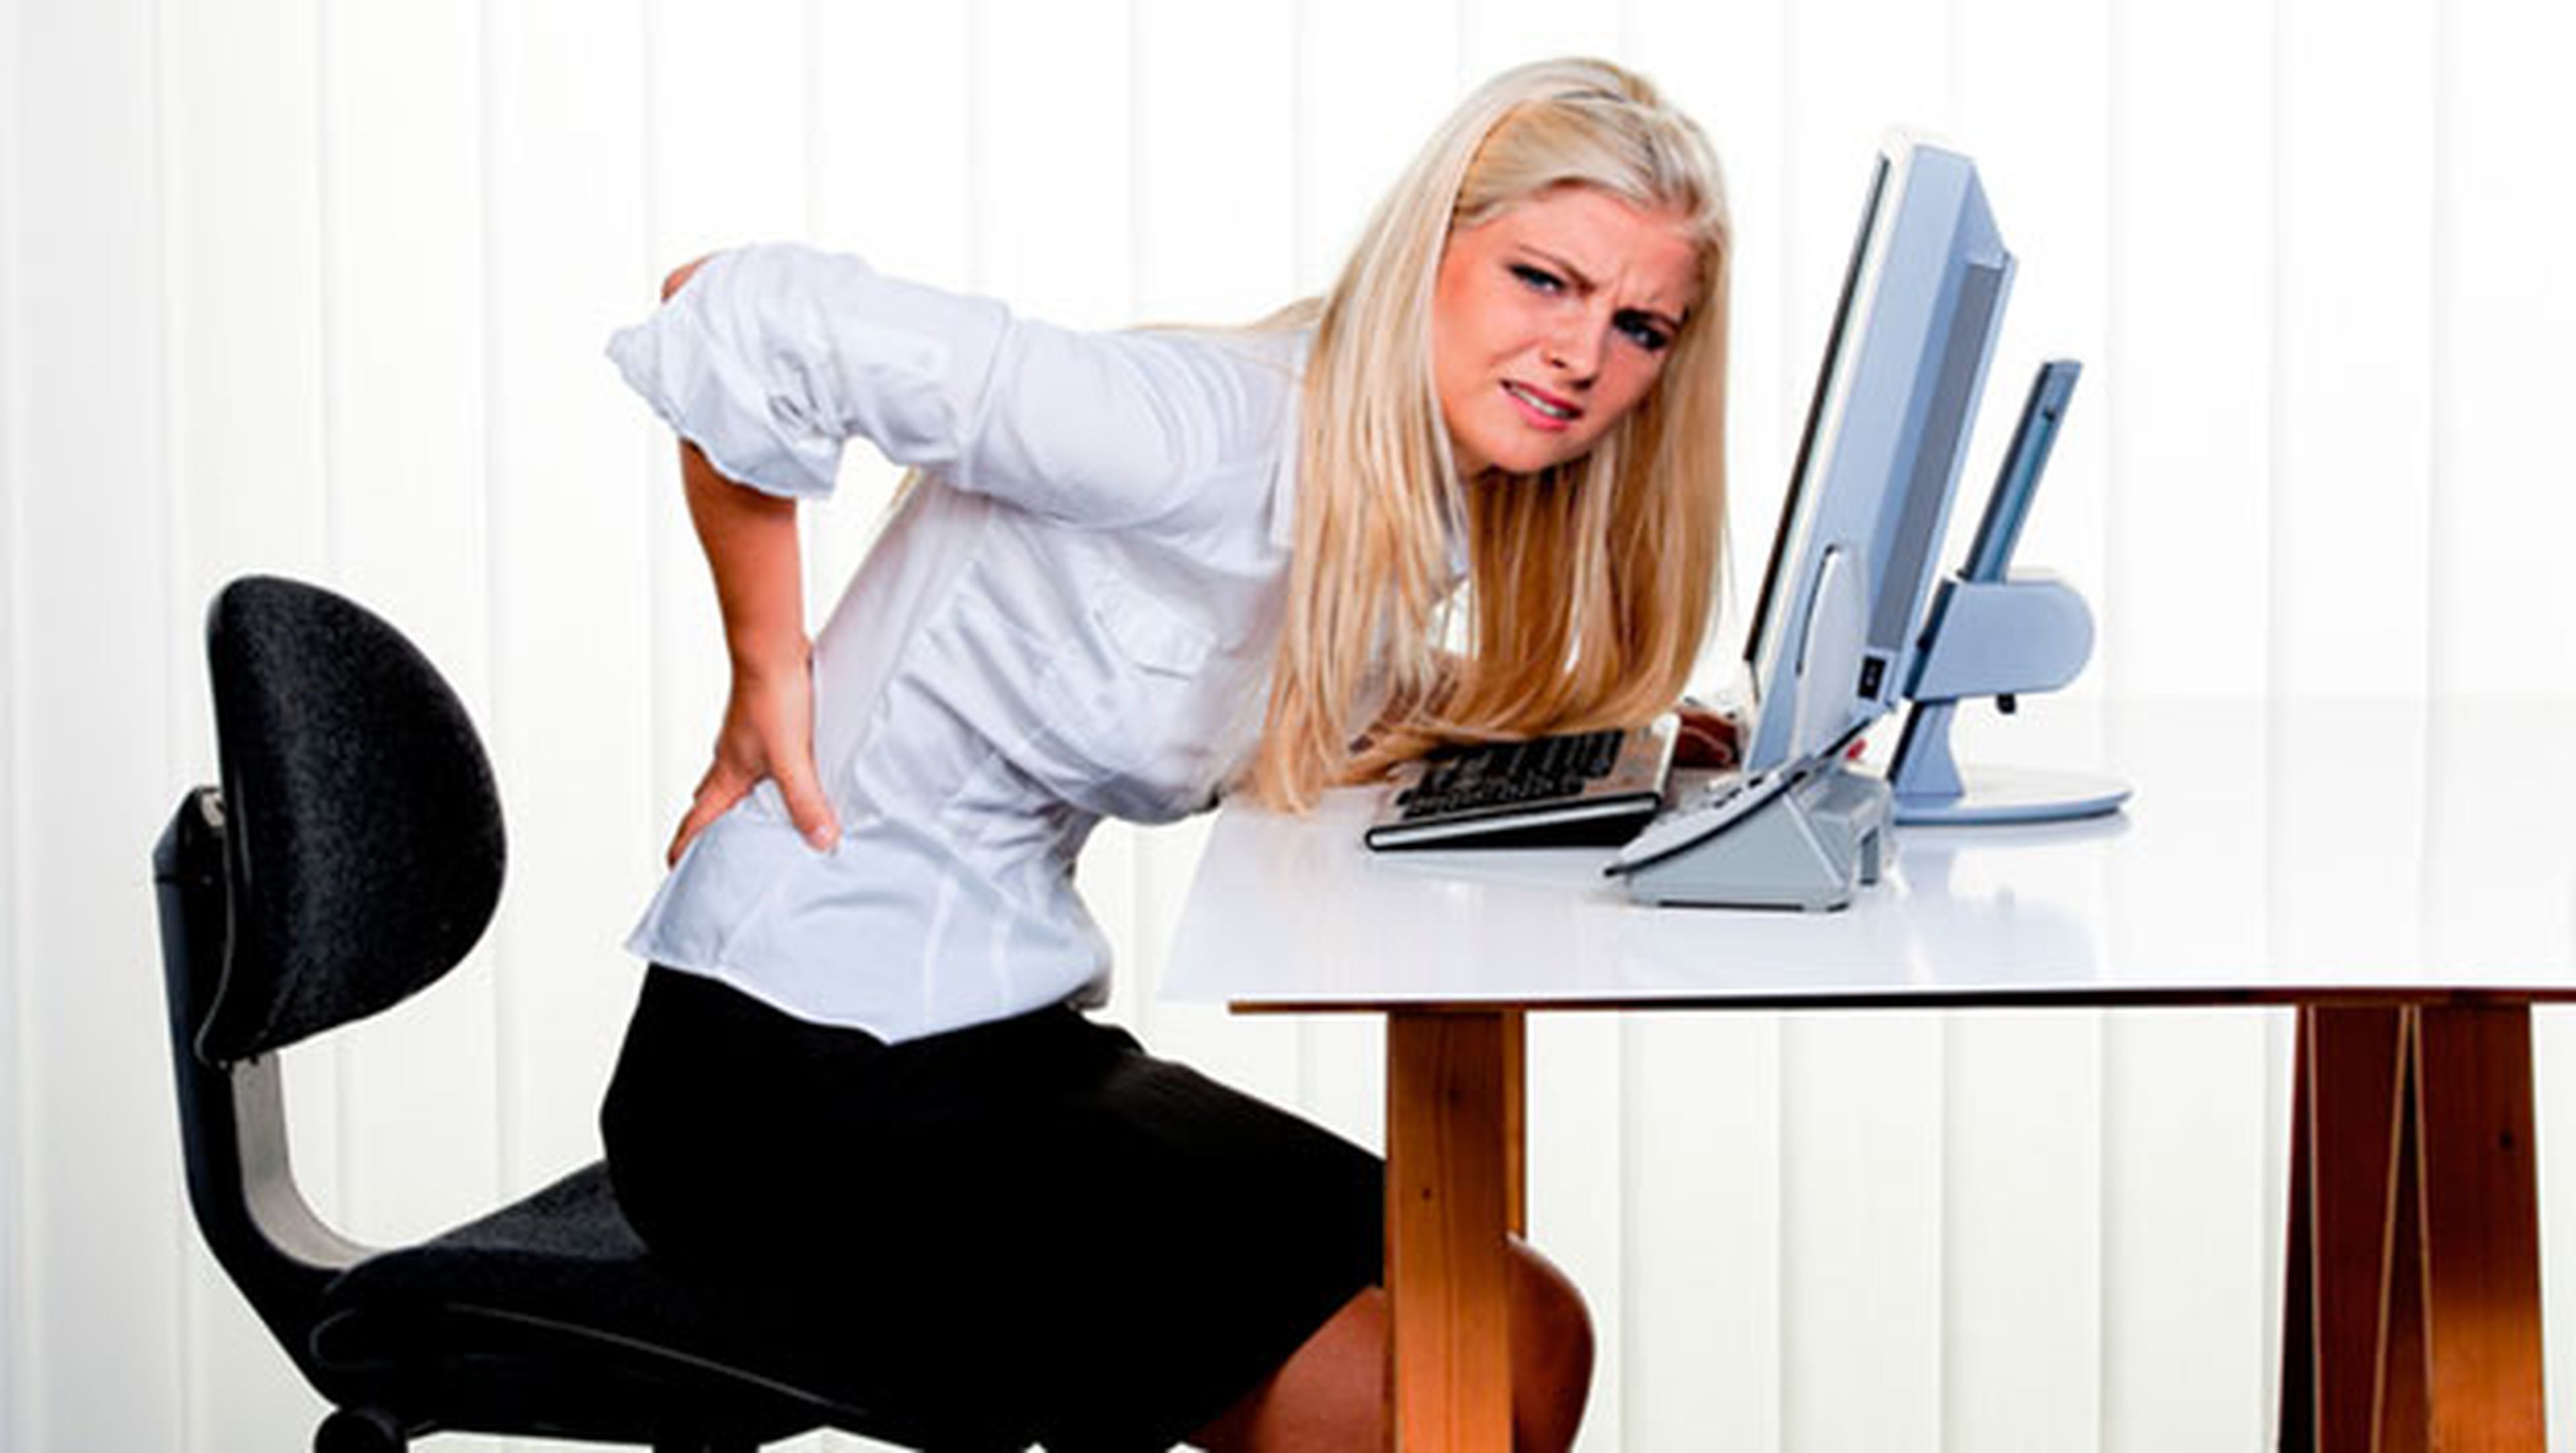 Evita dolores mejorando la ergonomía de tu espacio de trabajo